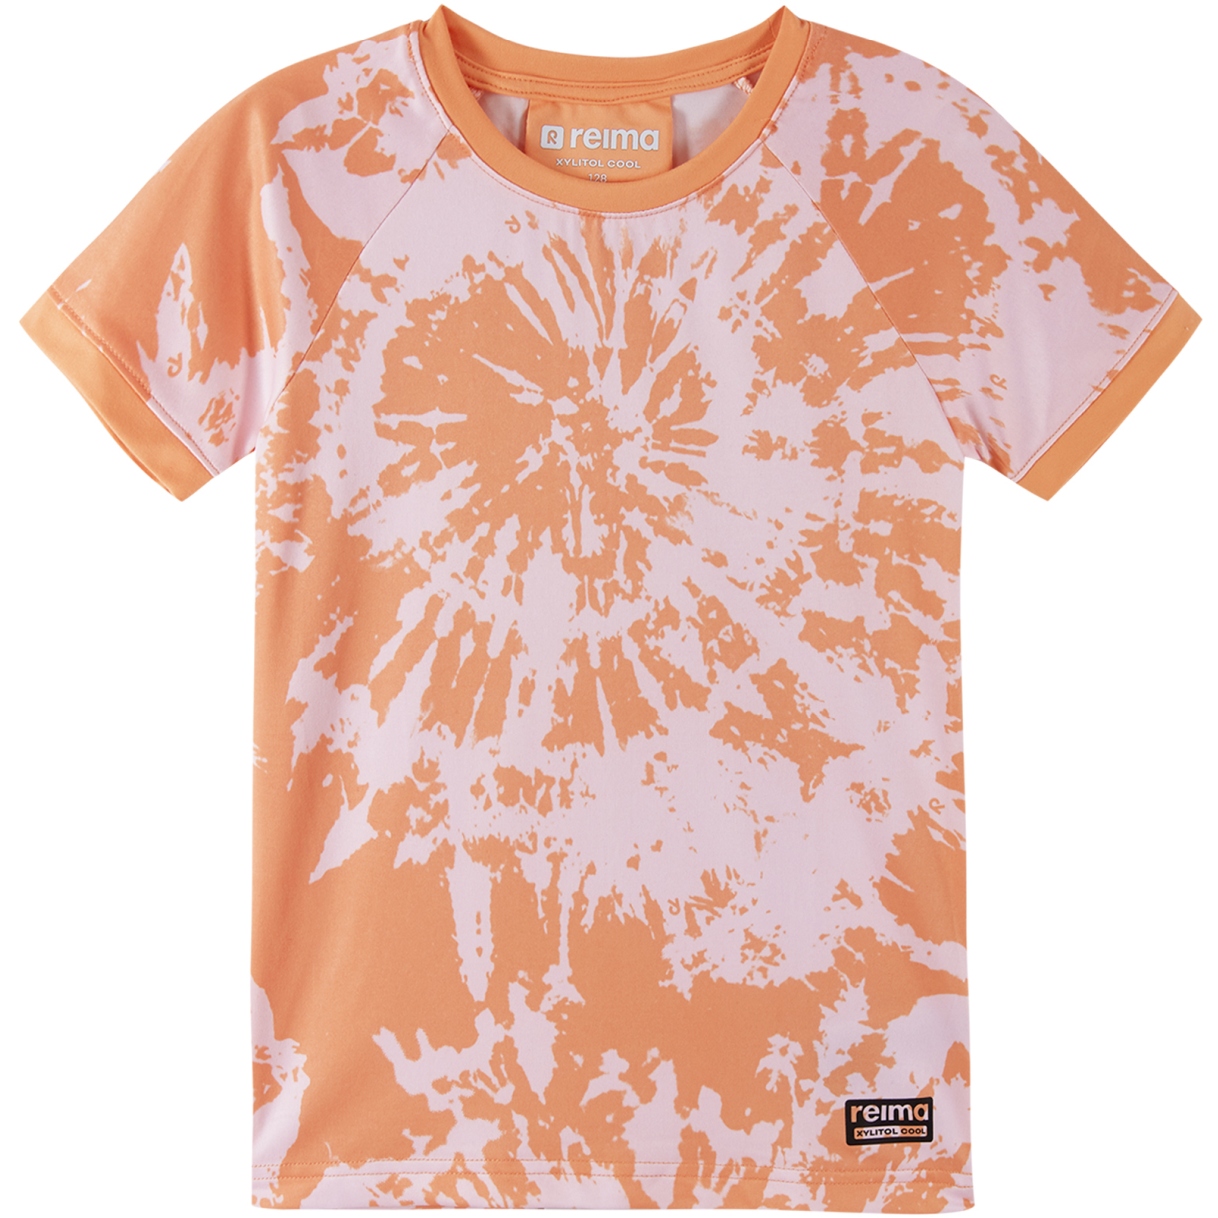 Produktbild von Reima Kinder T-Shirt Vilpo - coral pink 3214